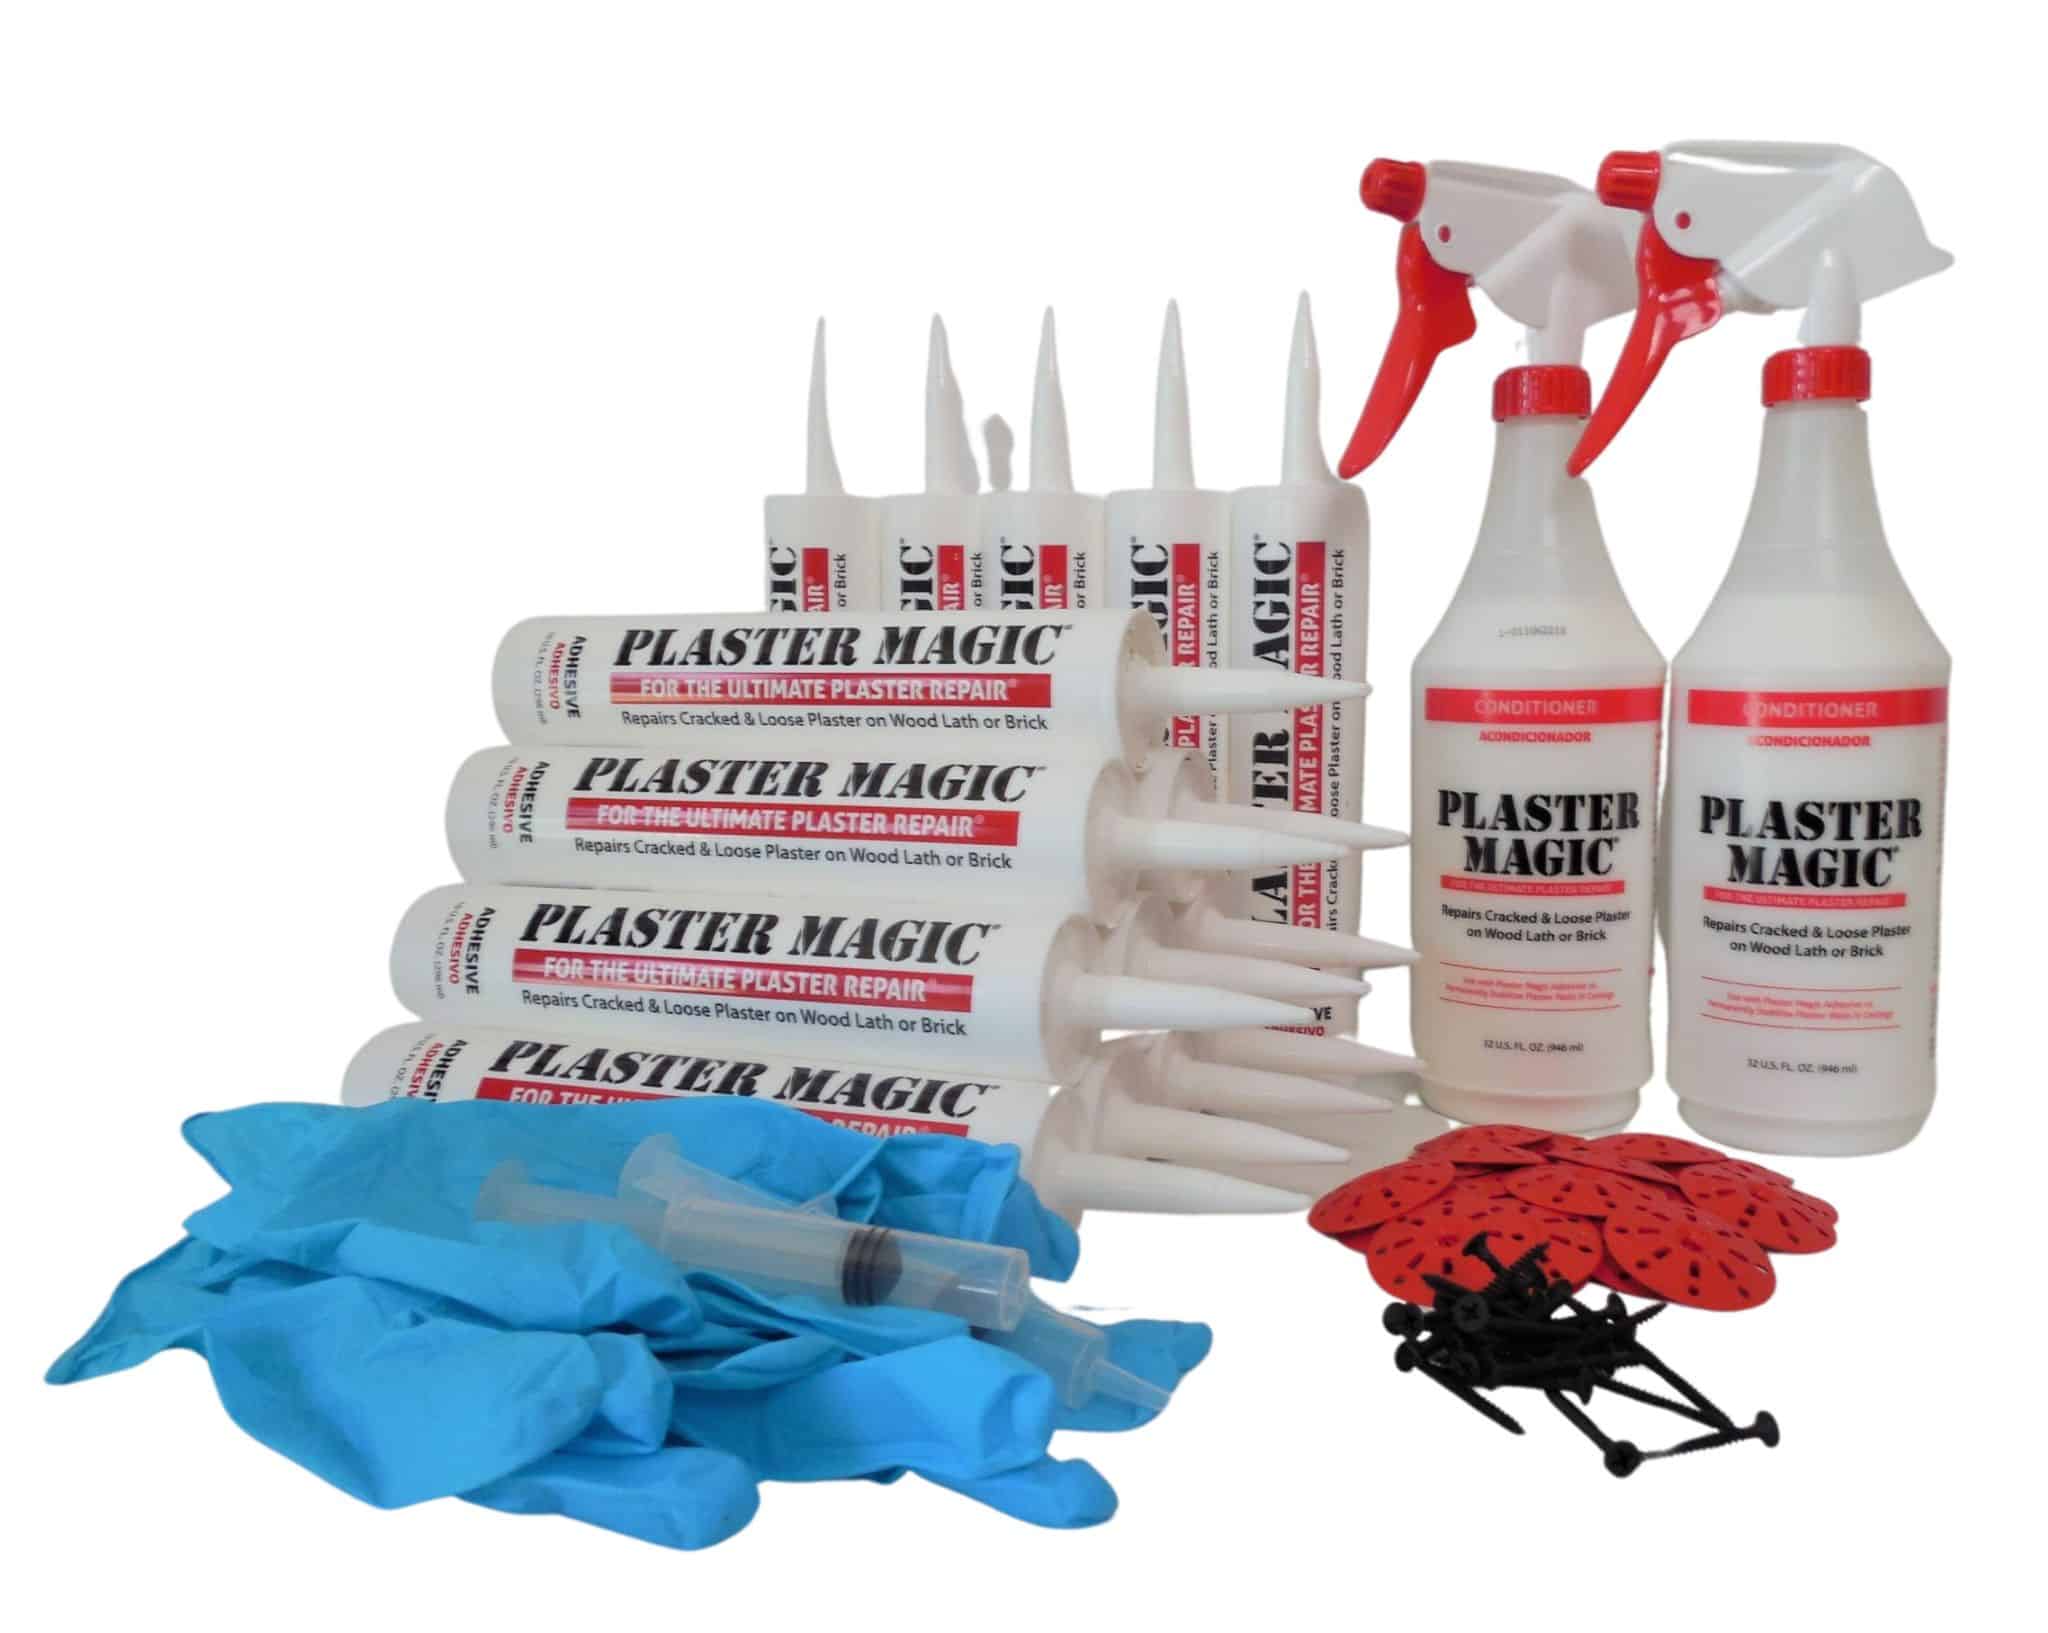 Plaster Magic-The Ultimate Plaster Repair